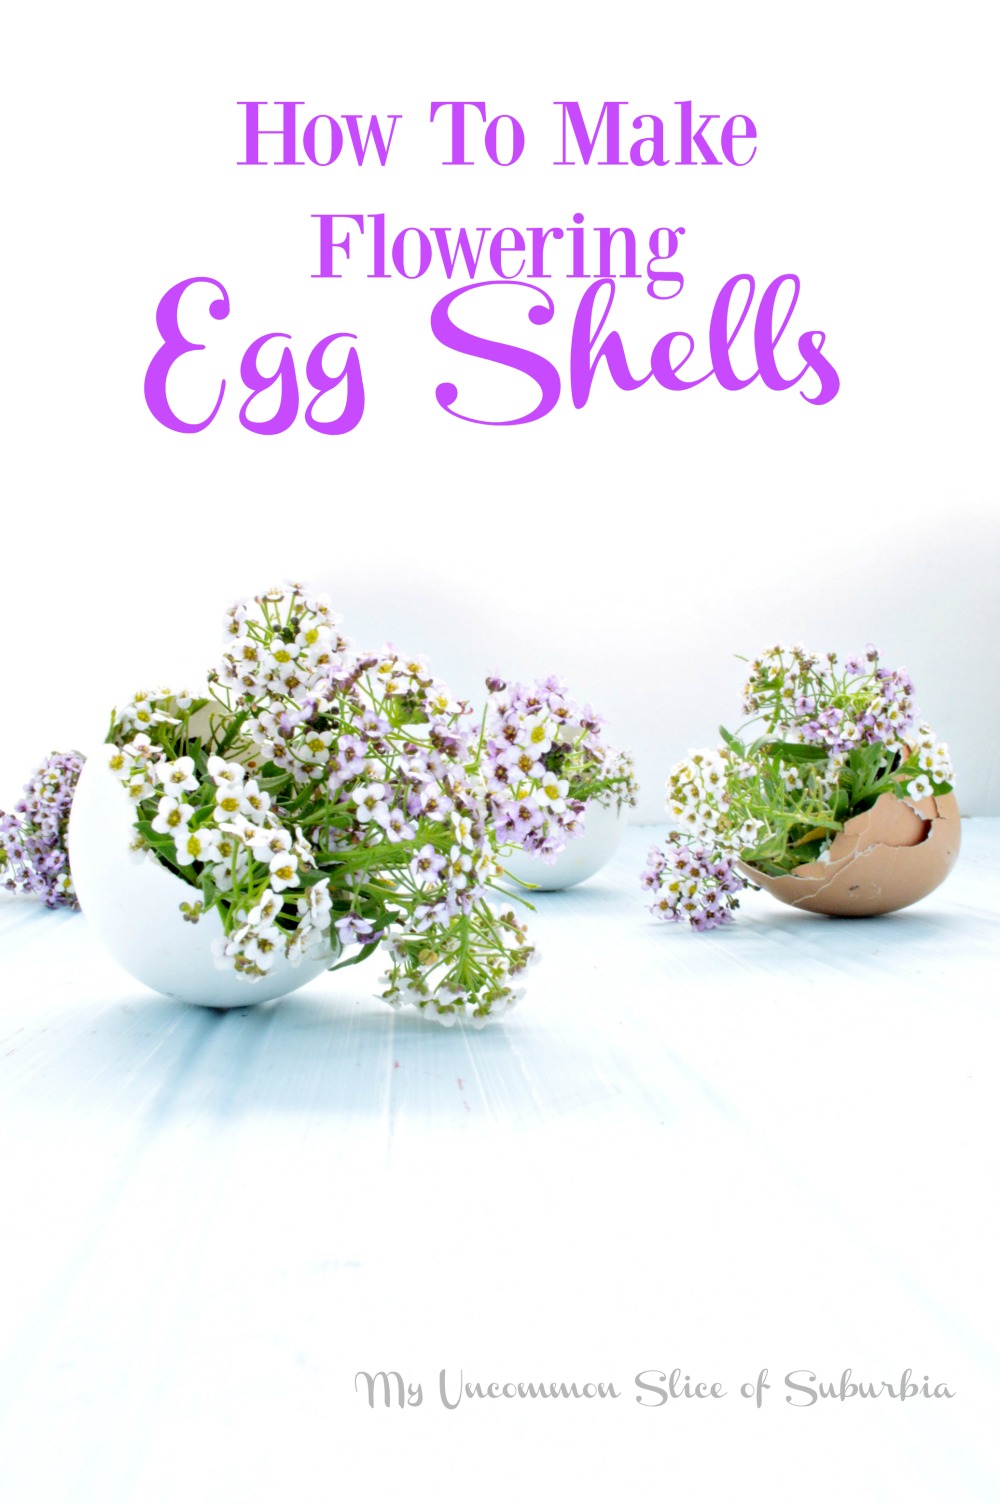 Flowering Egg Shells